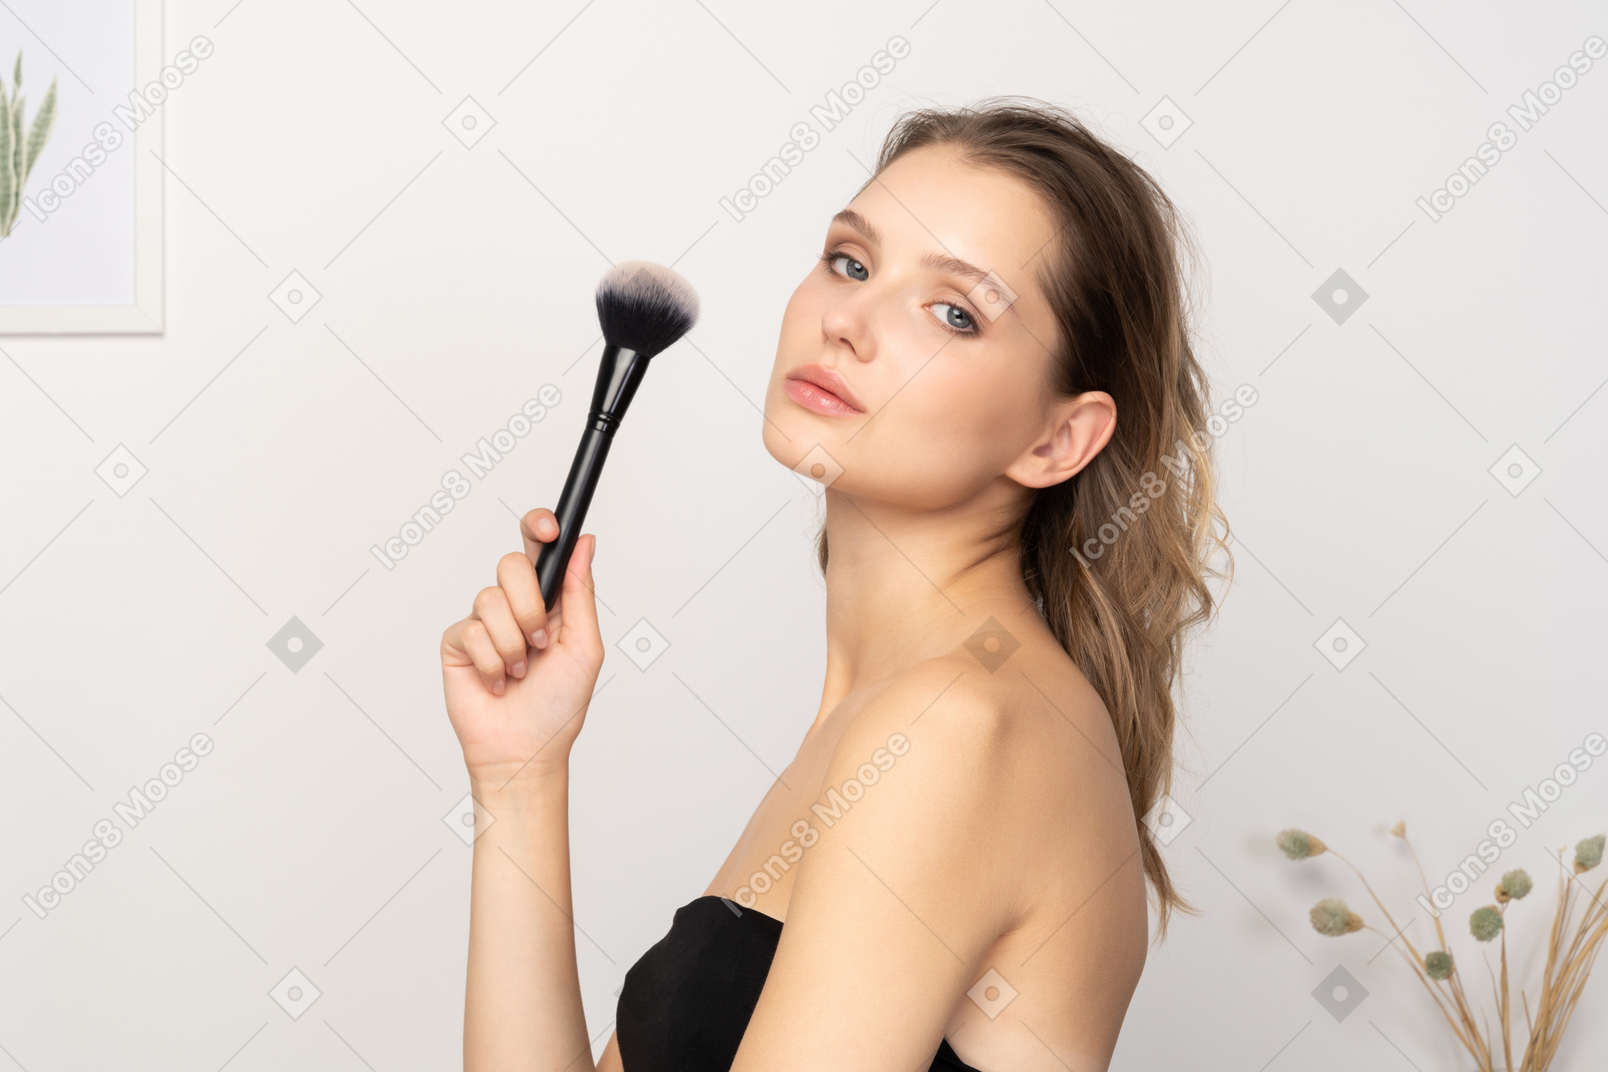 Vista lateral de uma jovem sensual segurando um pincel de maquiagem e olhando para a câmera